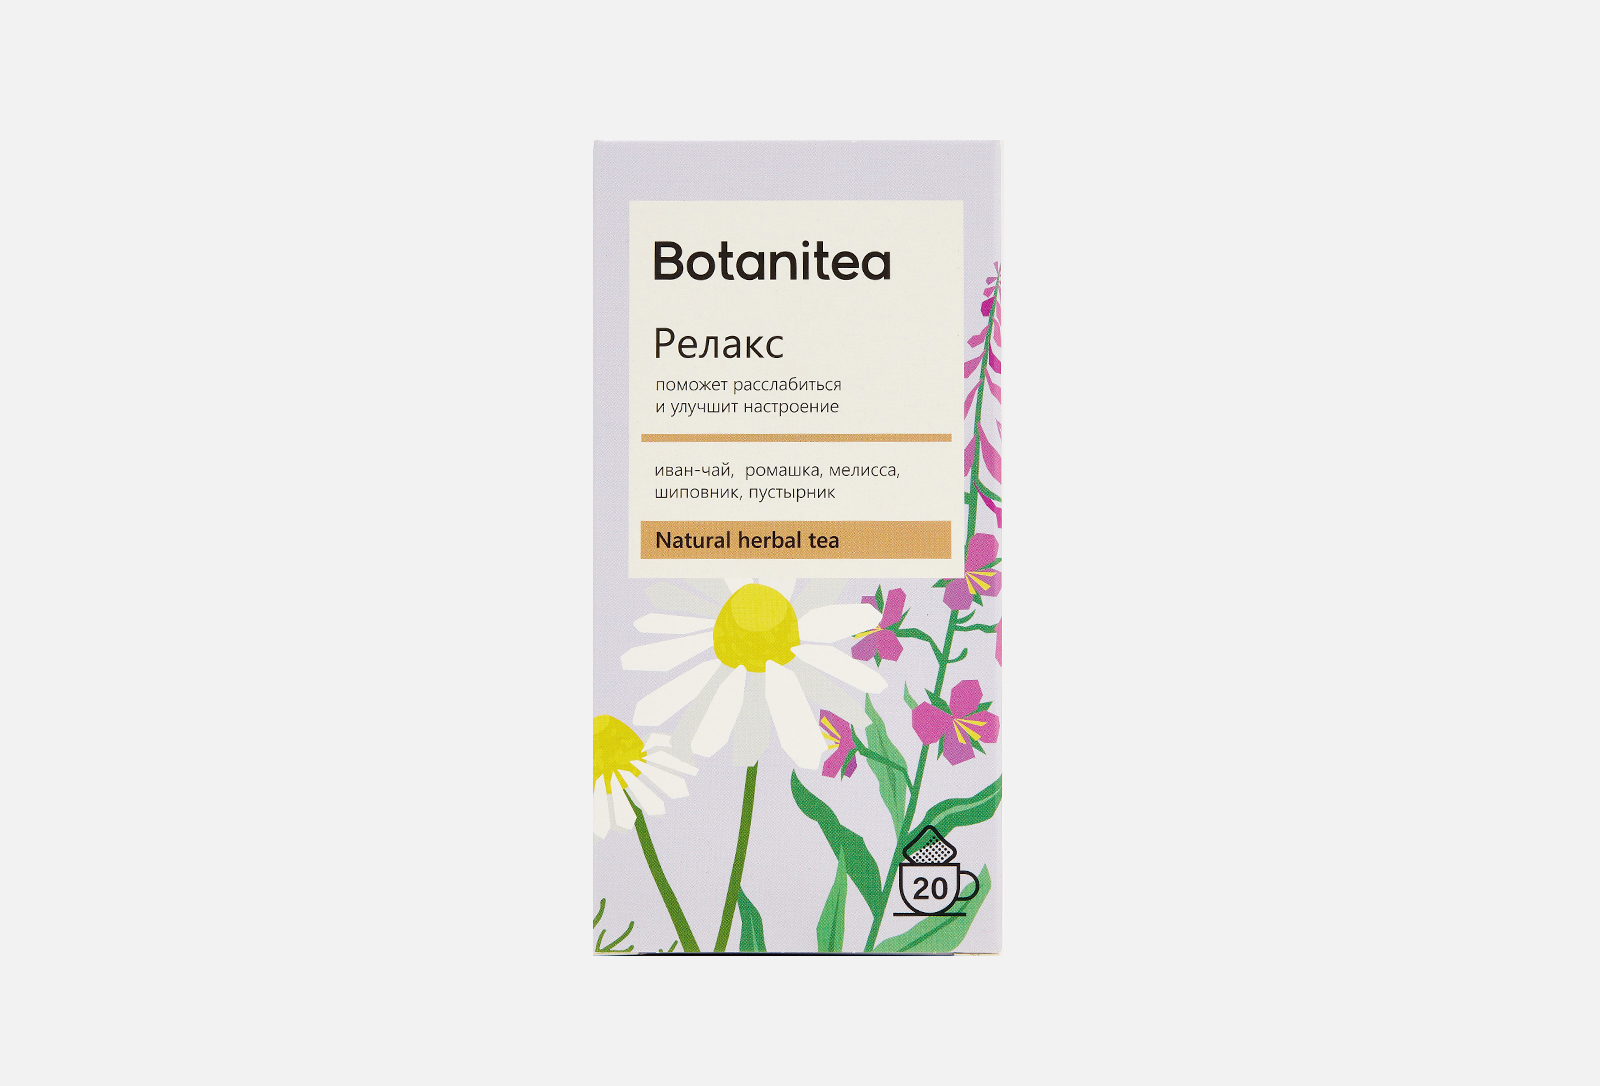 Botanitea. Biopractika чай. Биопрактика. Botanitea детокс цена.